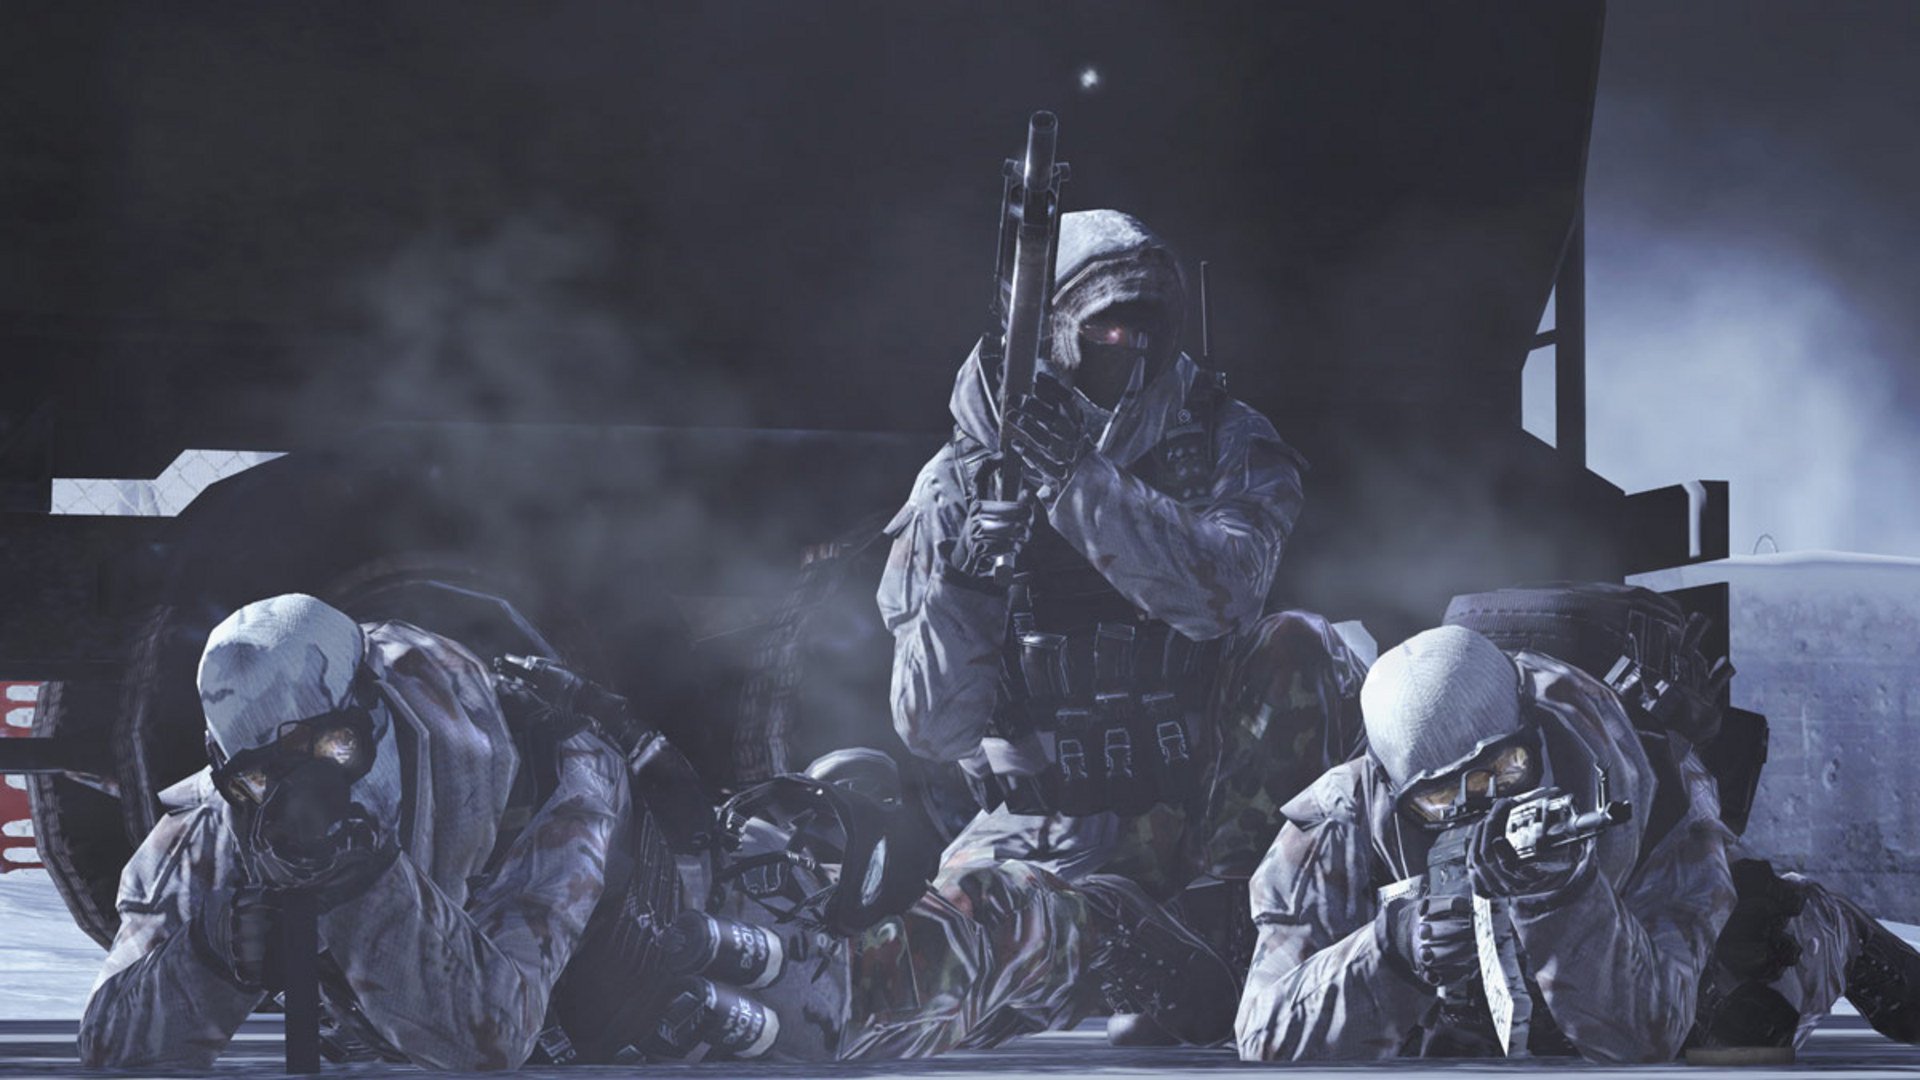 Call of Duty Modern Warfare 2 9